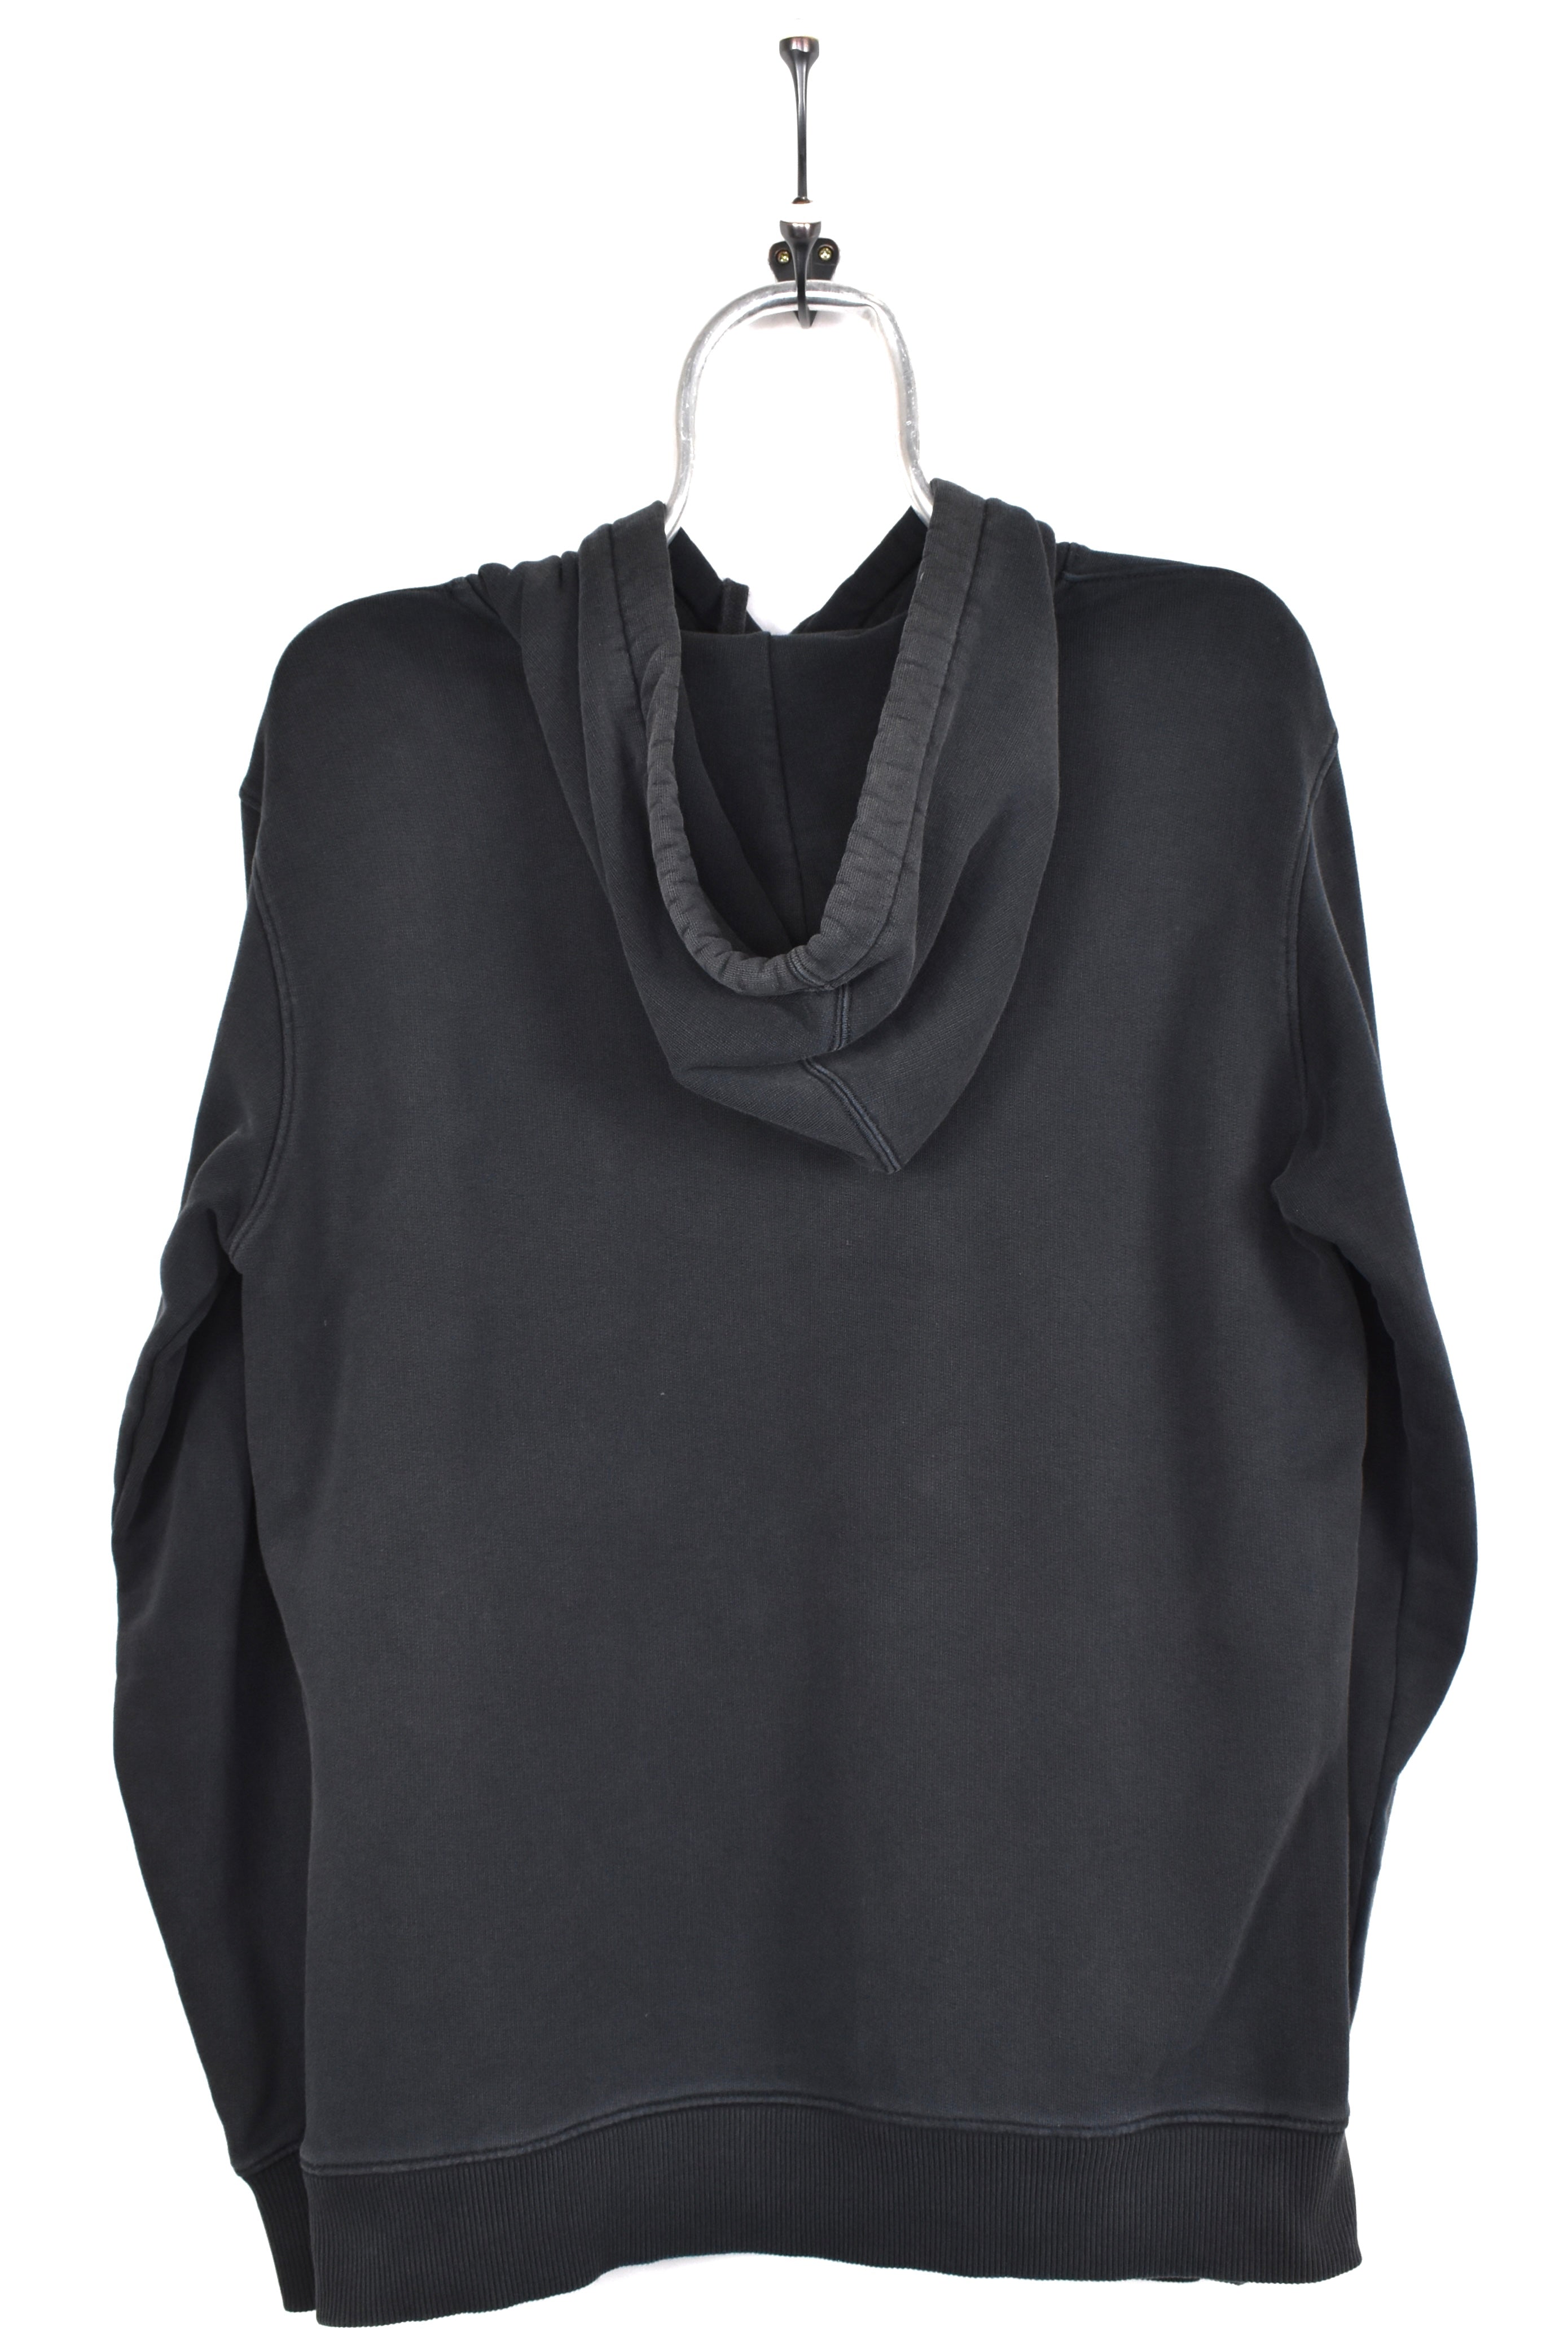 Modern Calvin Klein hoodie, black graphic sweatshirt - AU M CALVIN KLEIN